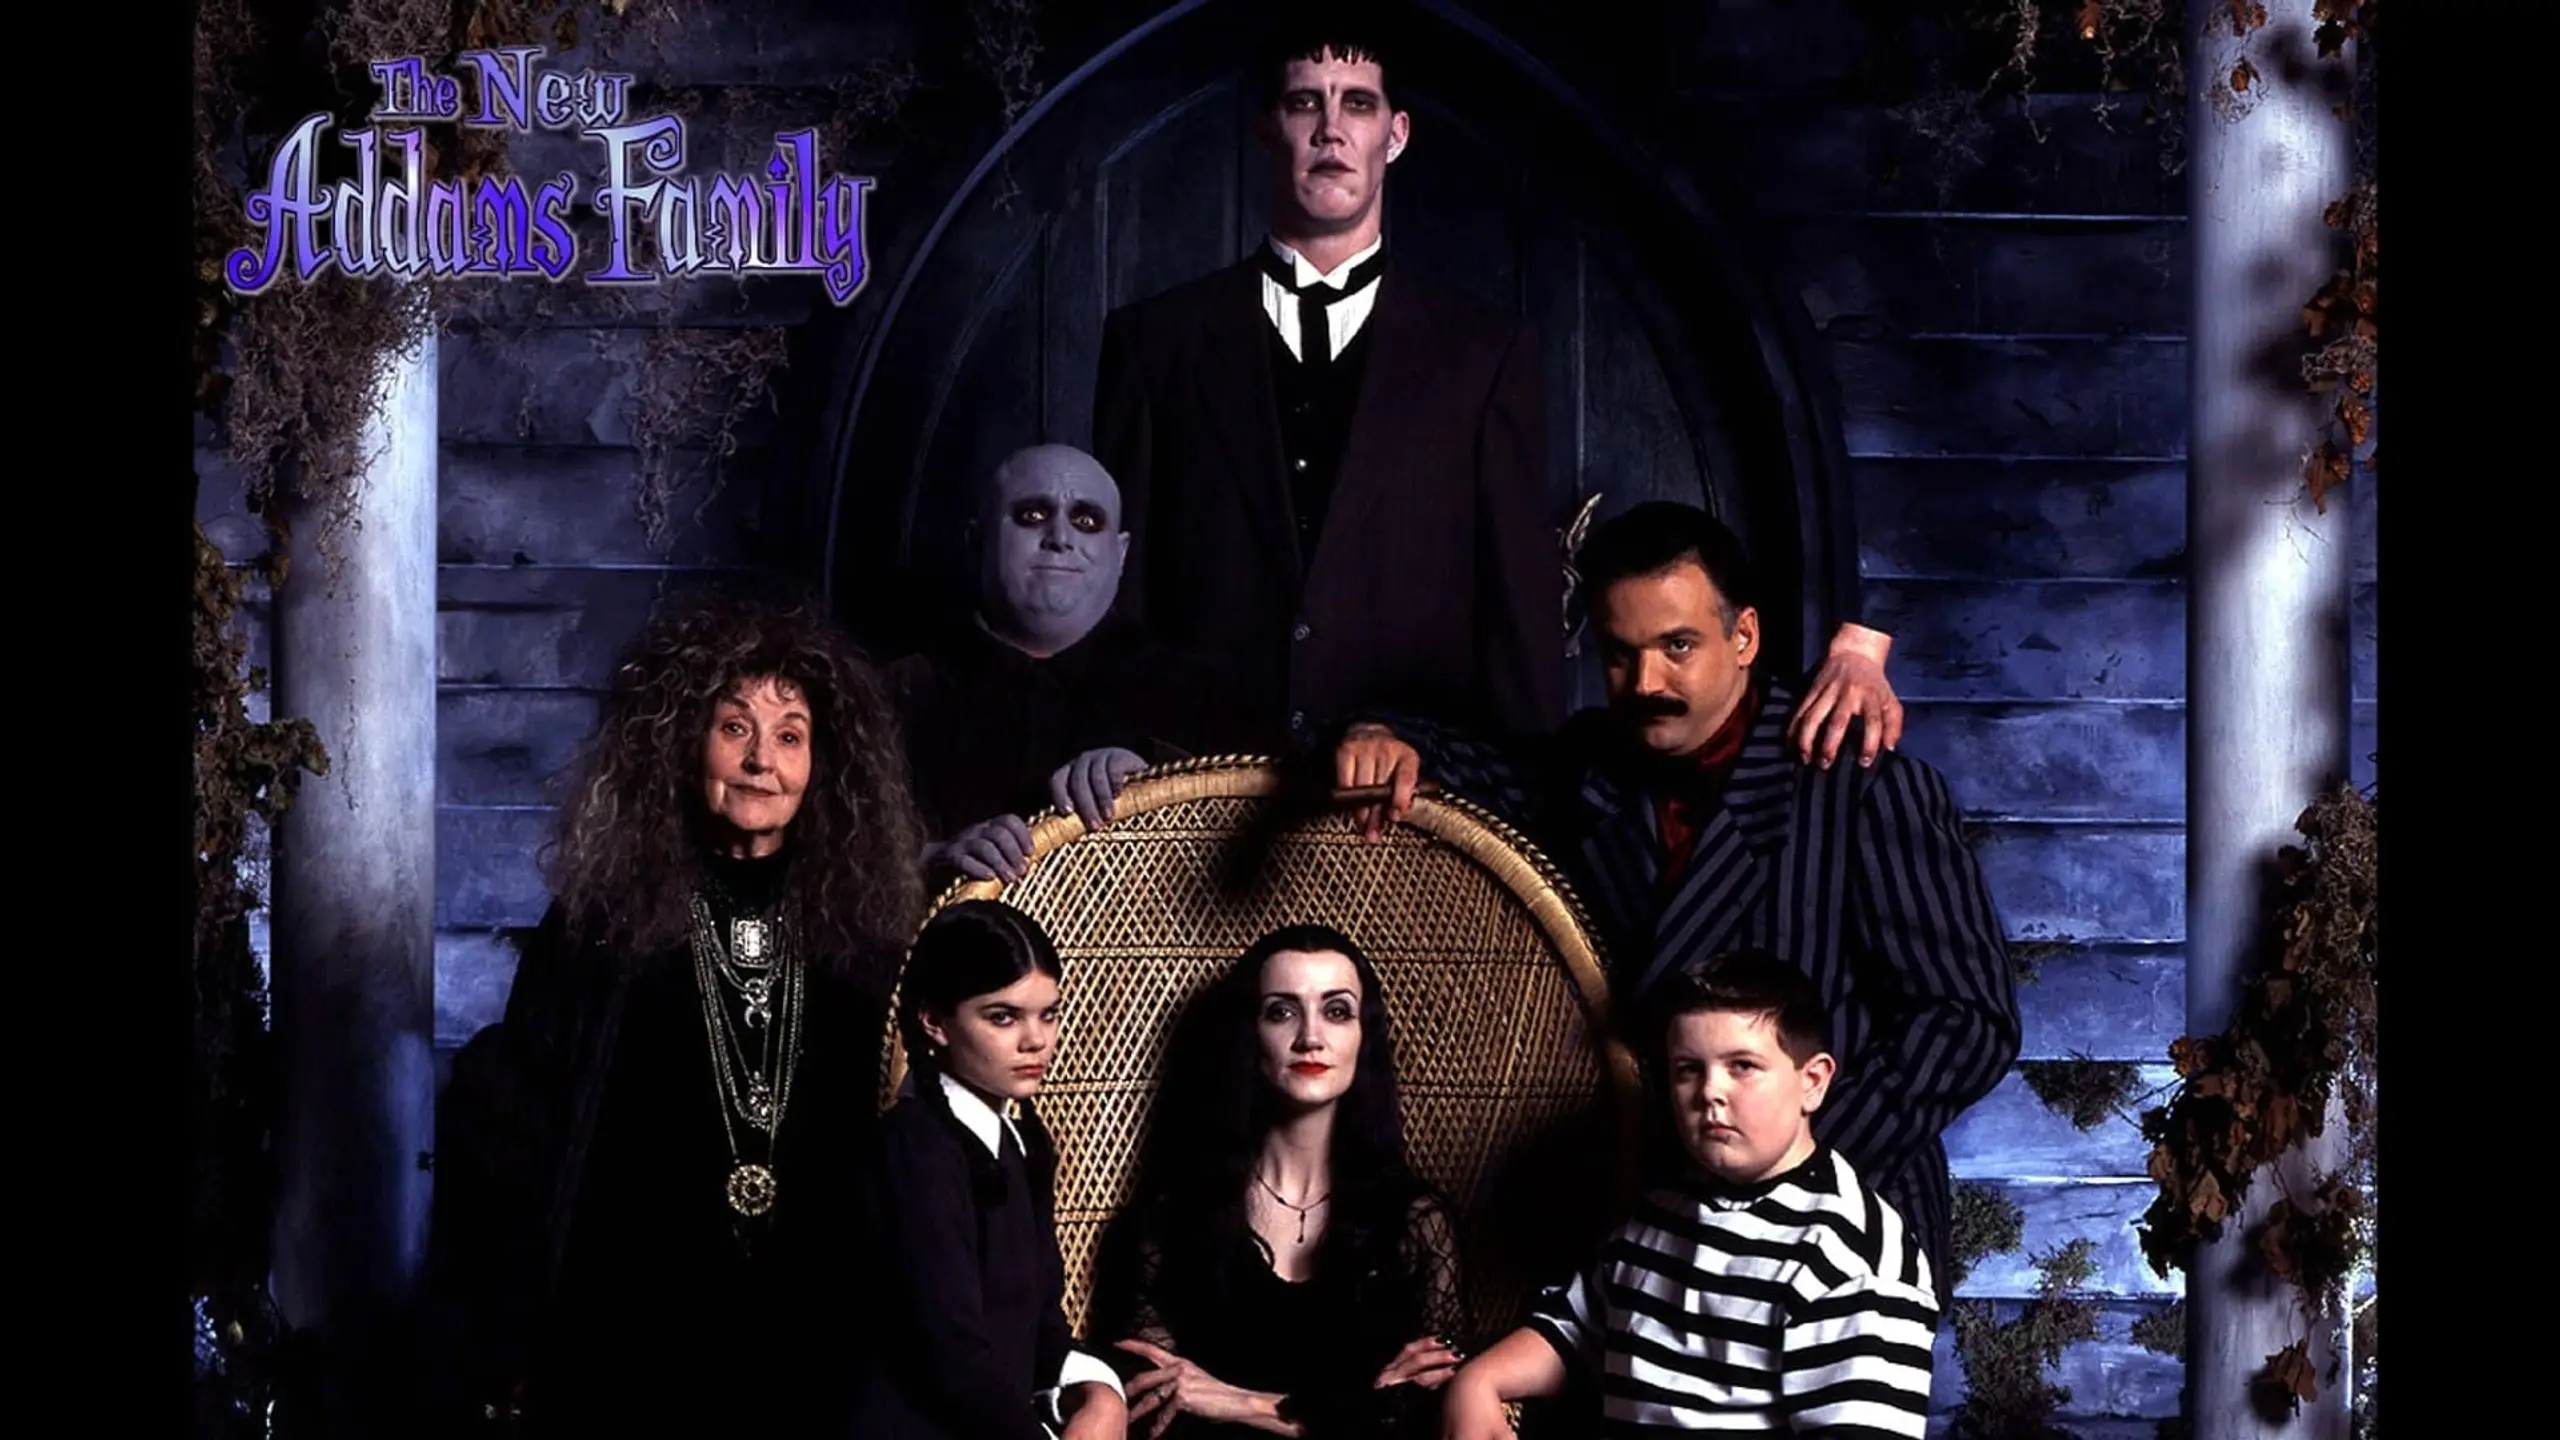 Die neue Addams Familie